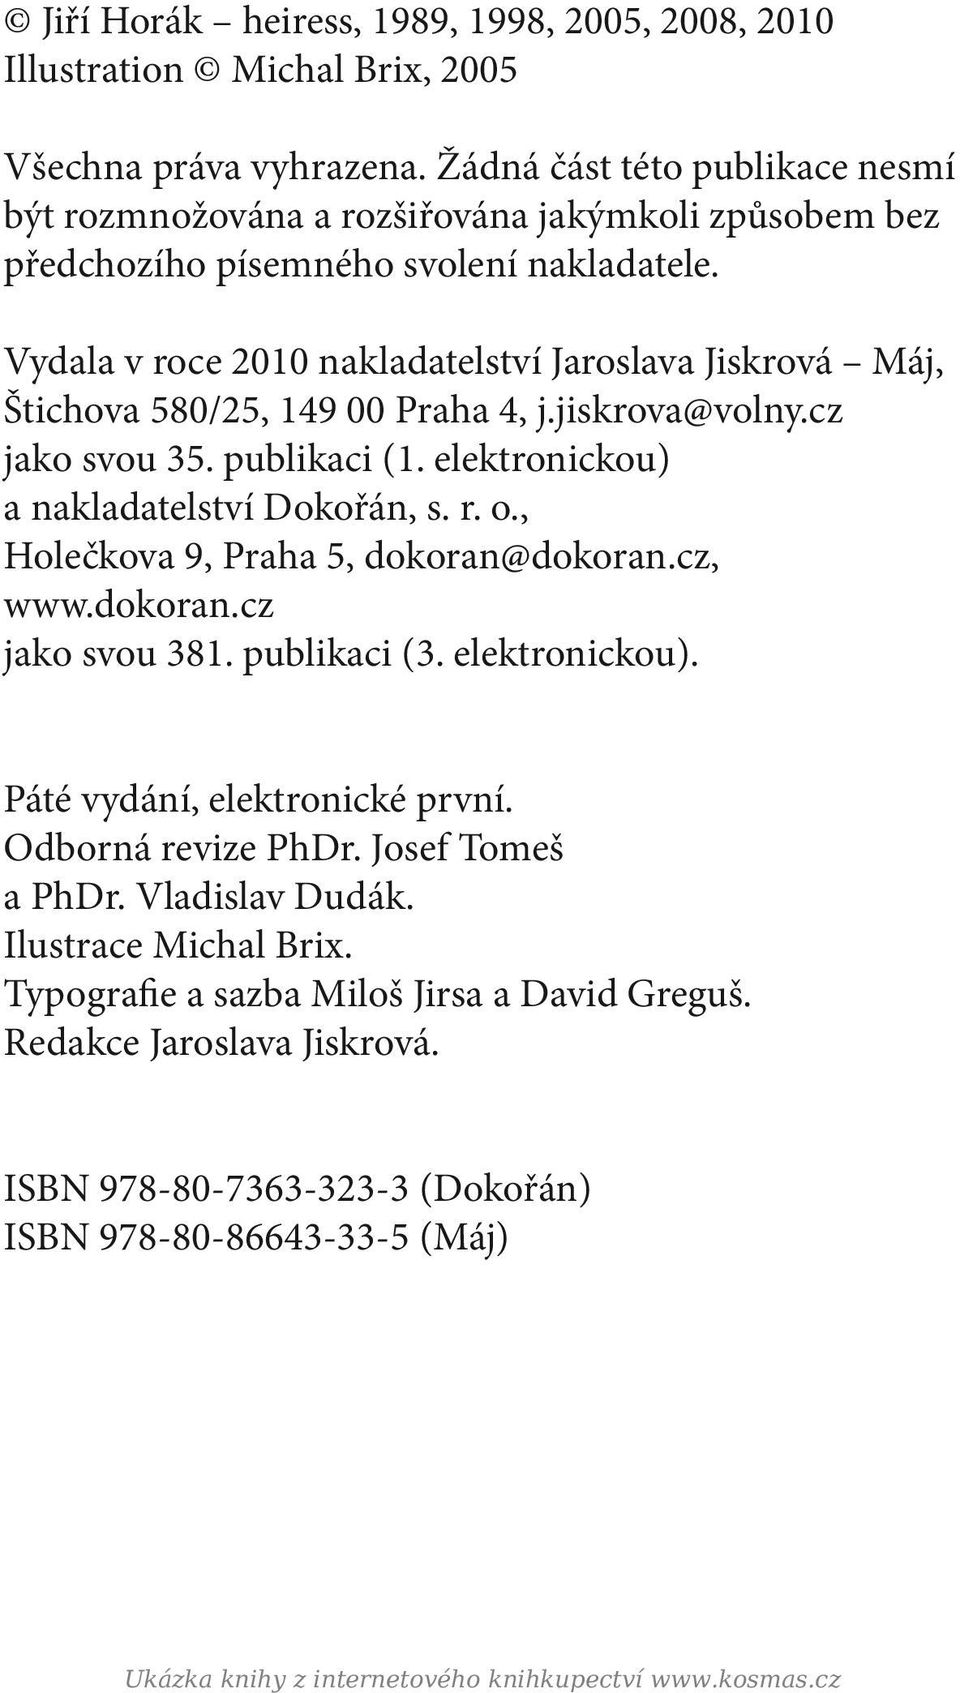 Vydala v roce 2010 nakladatelství Jaroslava Jiskrová Máj, Štichova 580/25, 149 00 Praha 4, j.jiskrova@volny.cz jako svou 35. publikaci (1. elektronickou) a nakladatelství Dokořán, s. r. o.